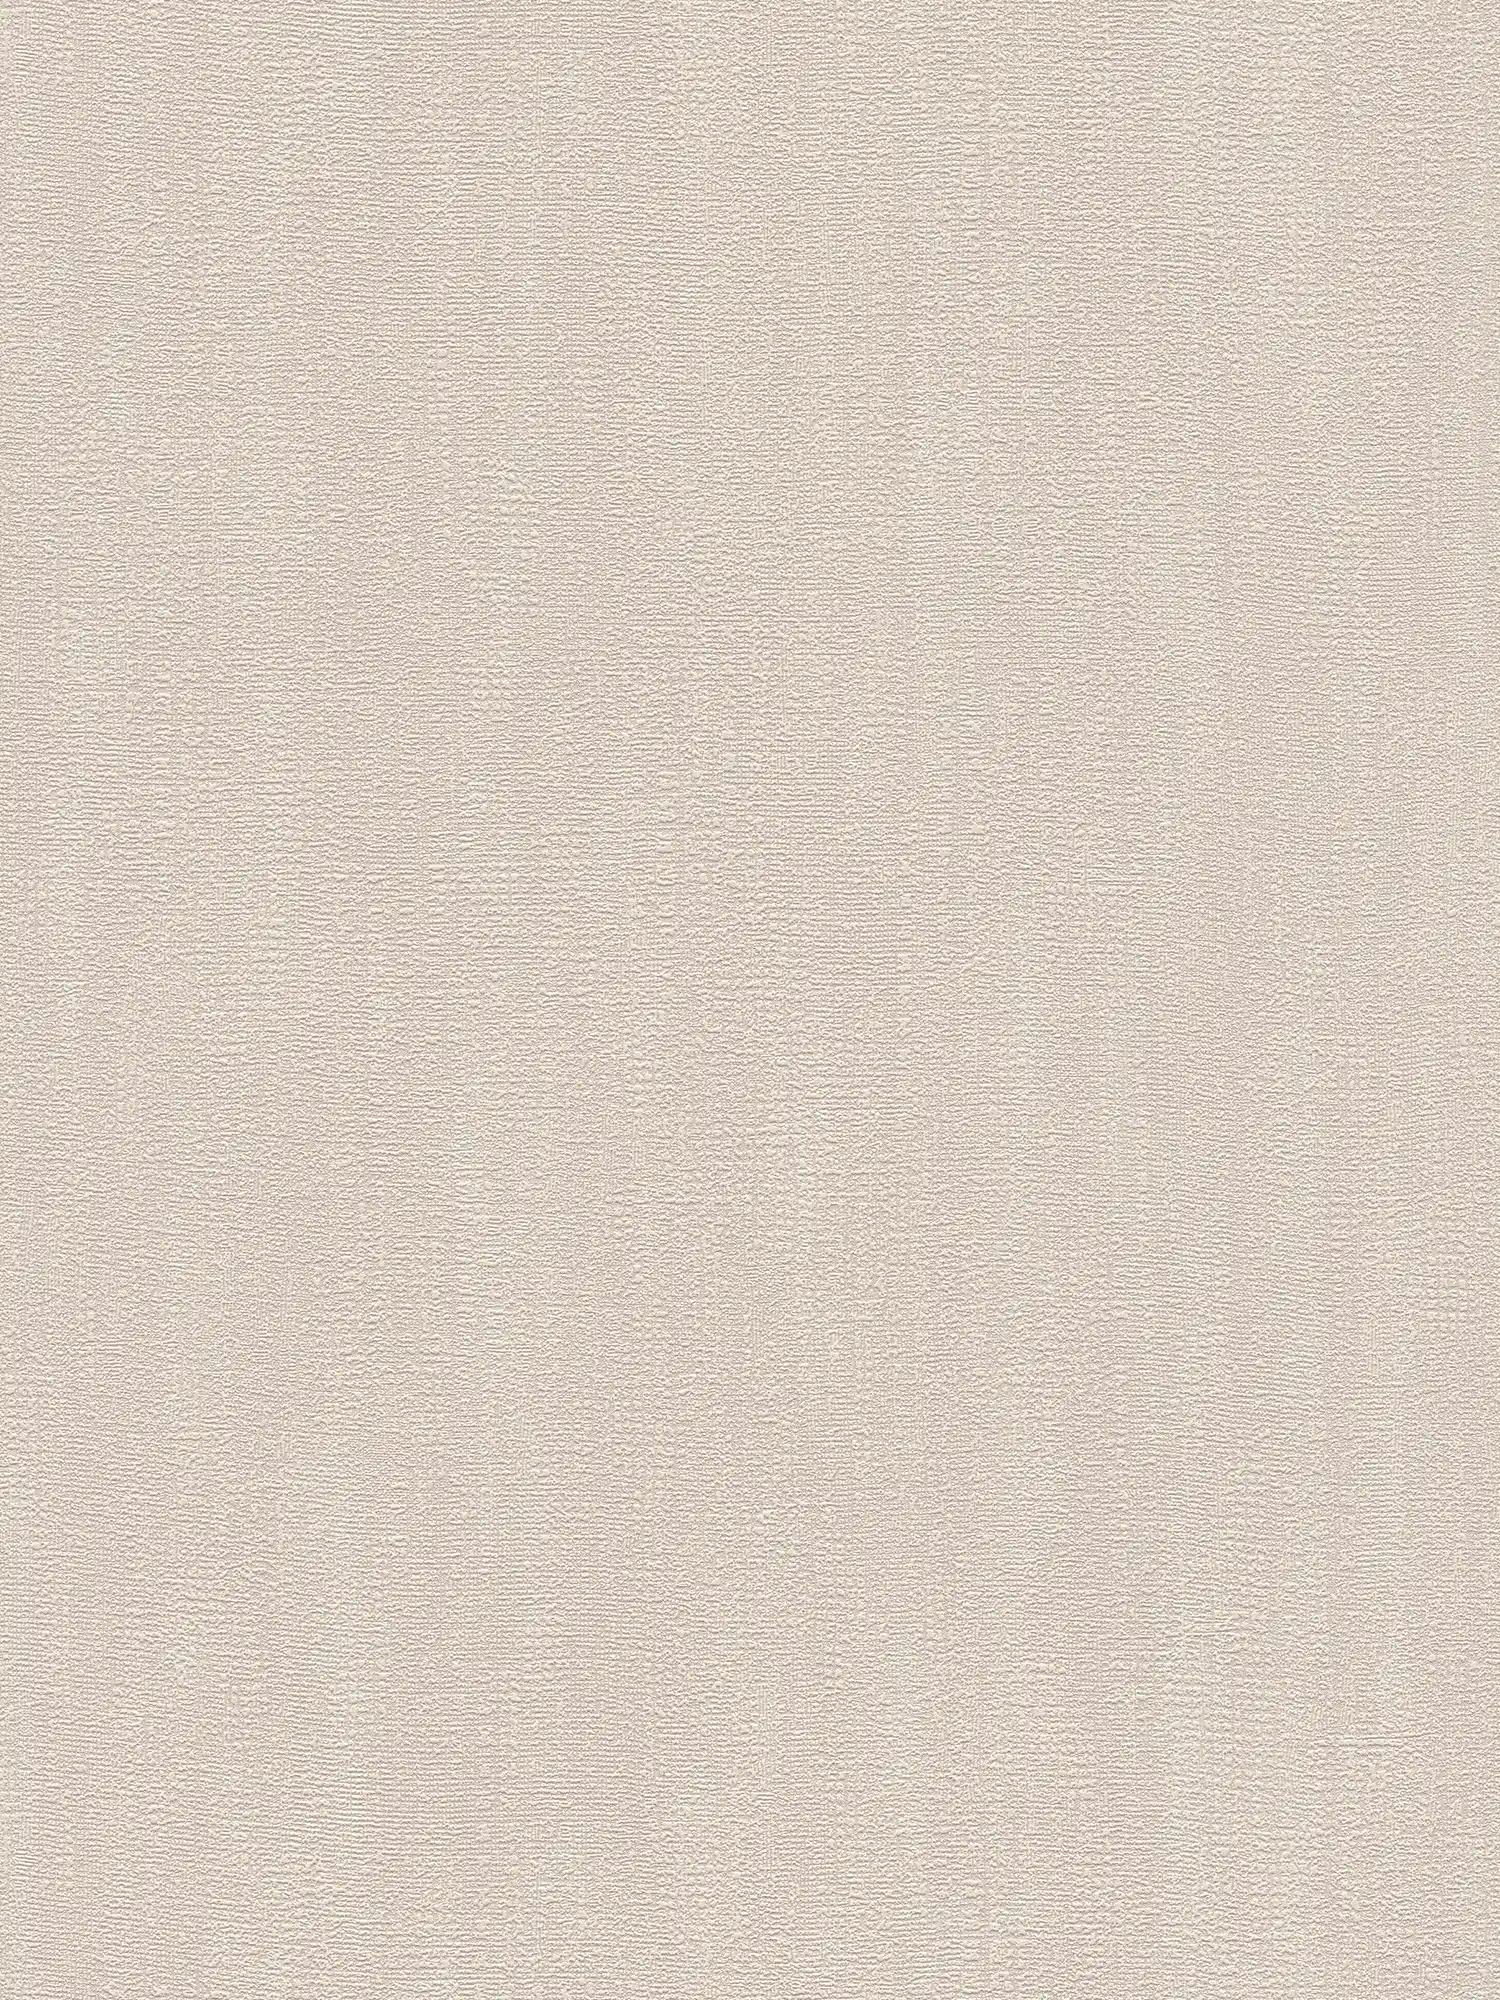 Behang met textuurpatroon - beige, bruin
